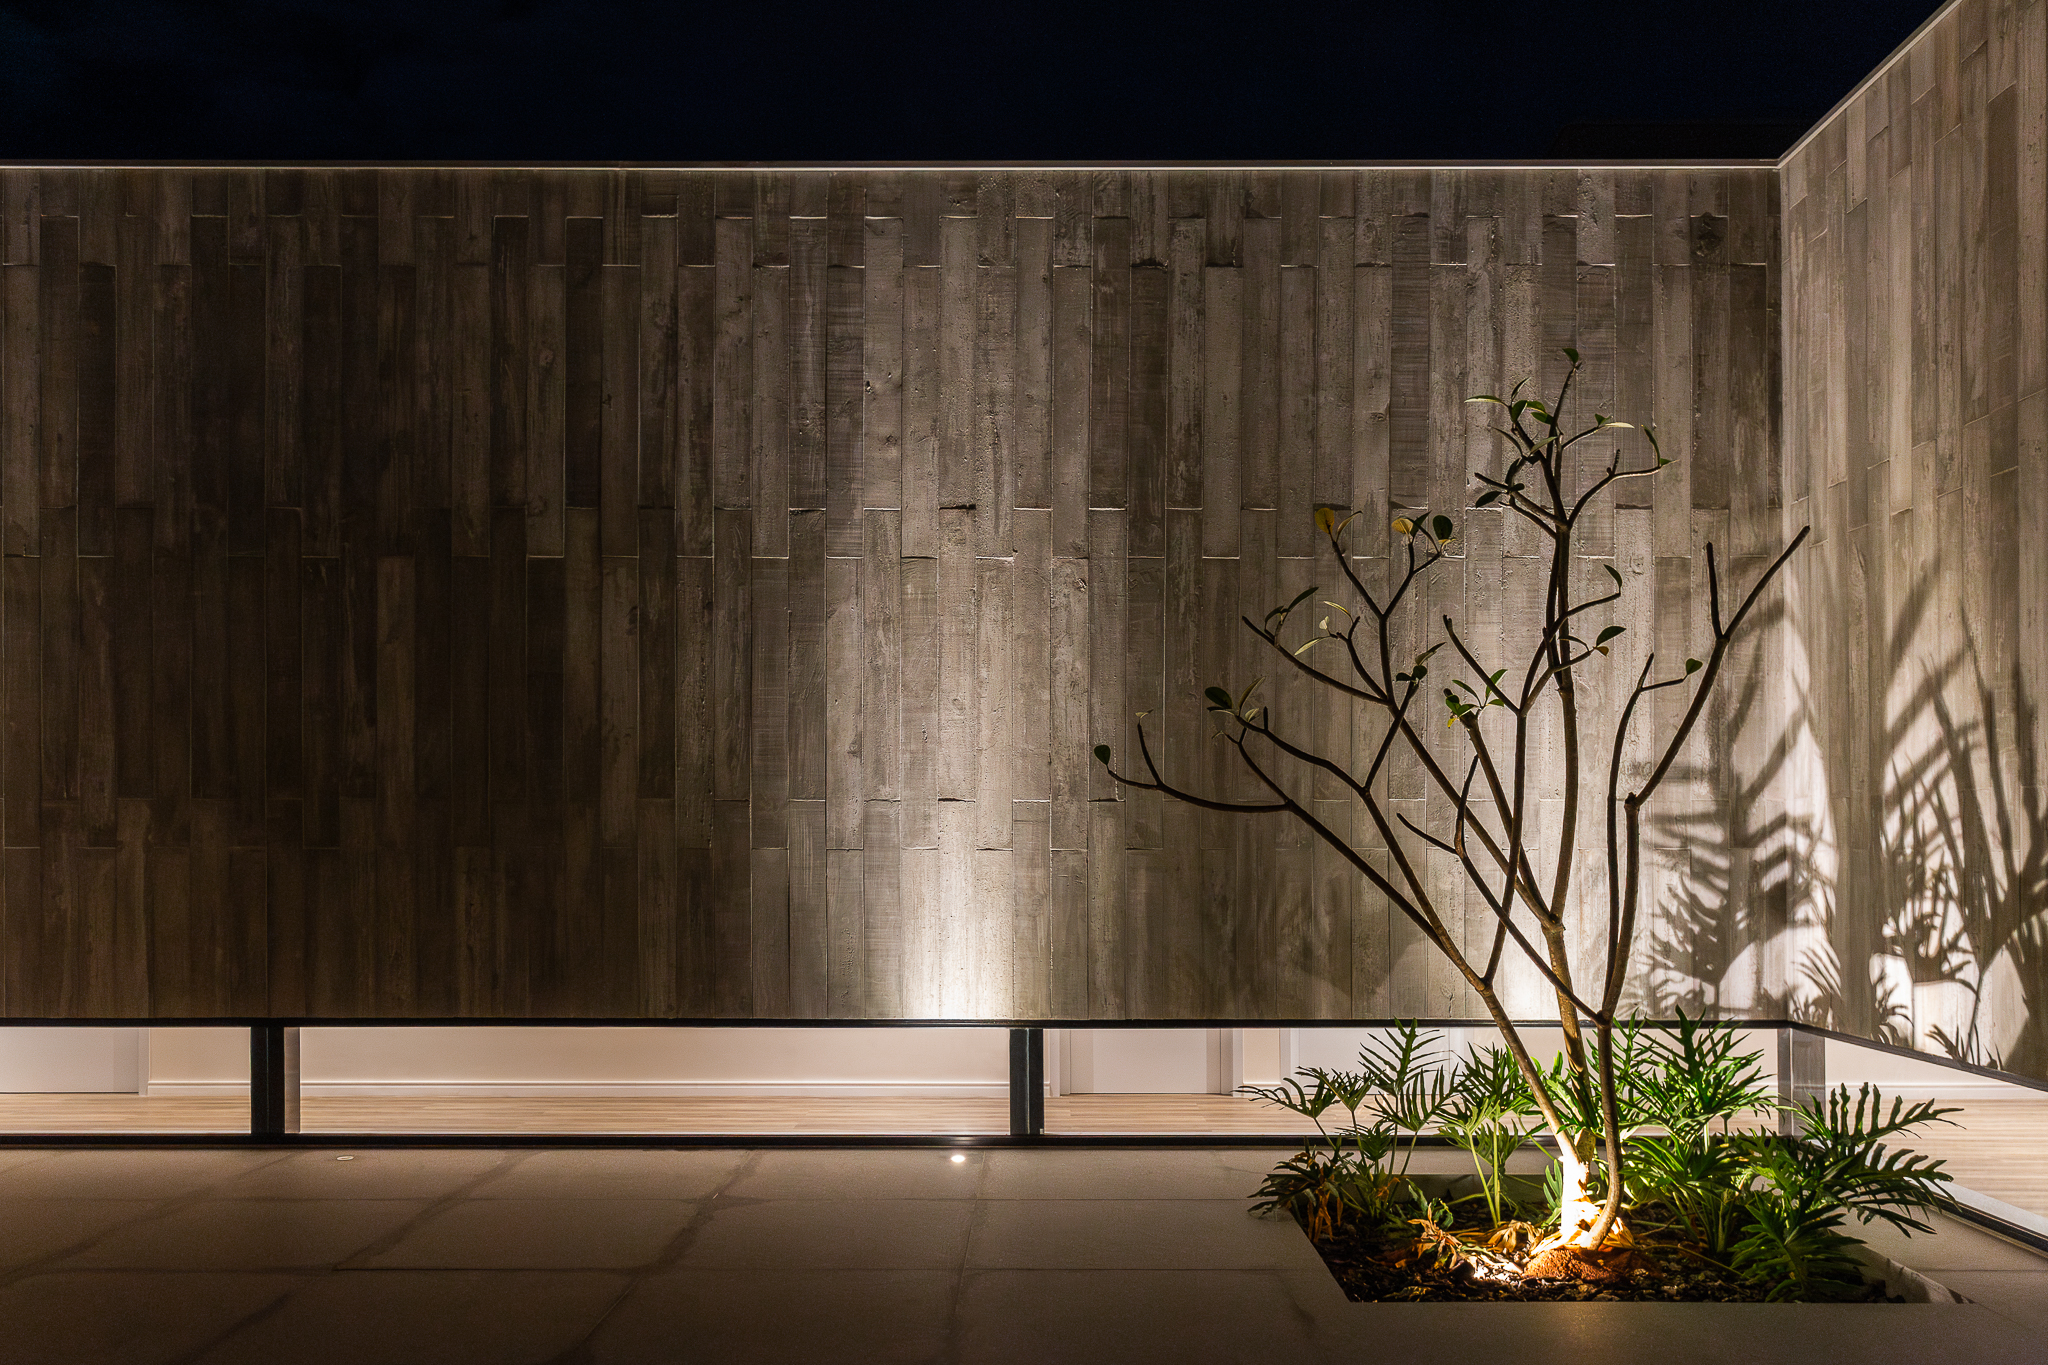 Casa de 379 m² une arquitetura minimalista e integração com o entorno. Projeto Camila Porto. Na foto, jardim com iluminação cênica.